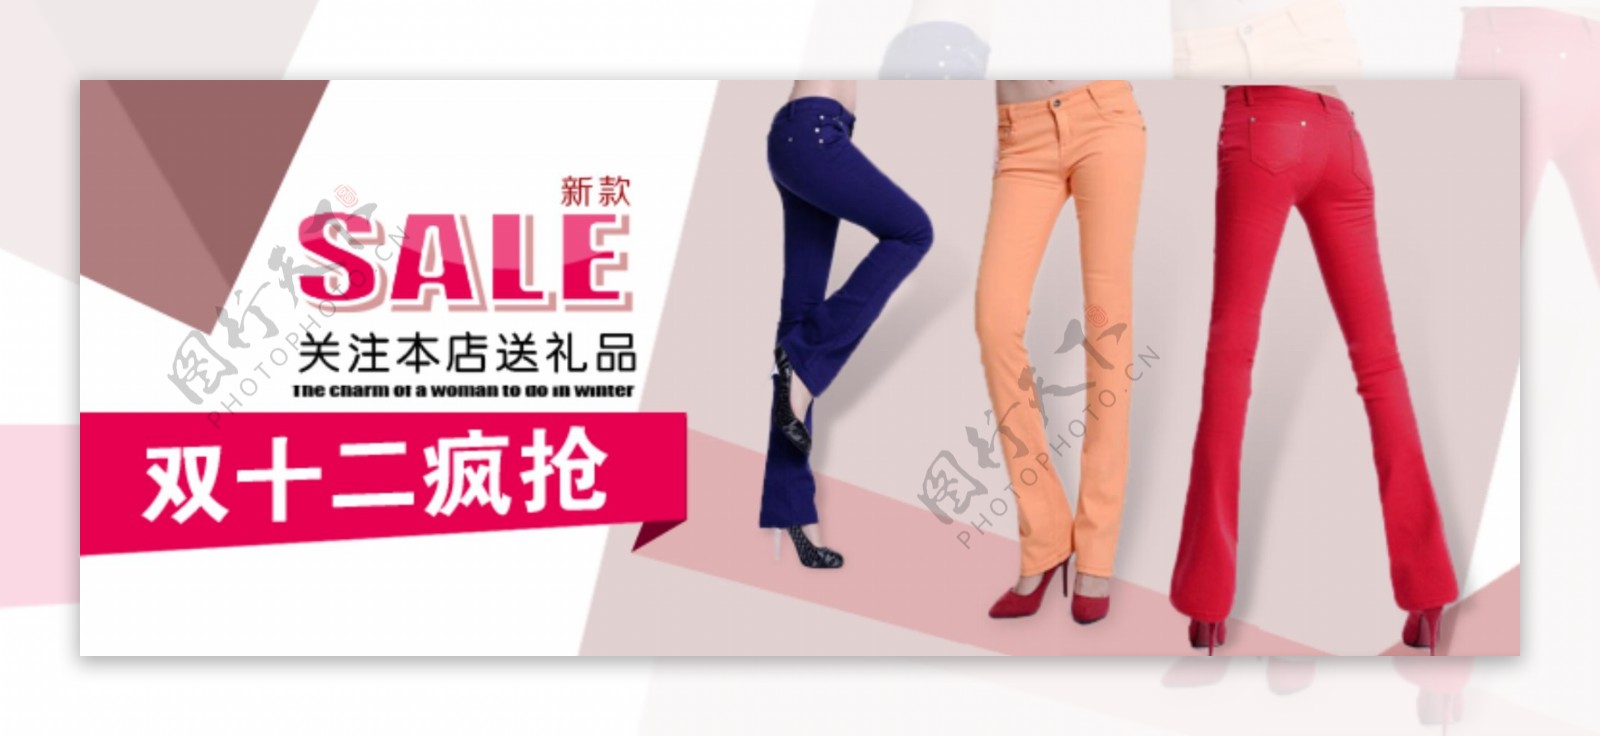 淘宝海报促销女装裤子促销